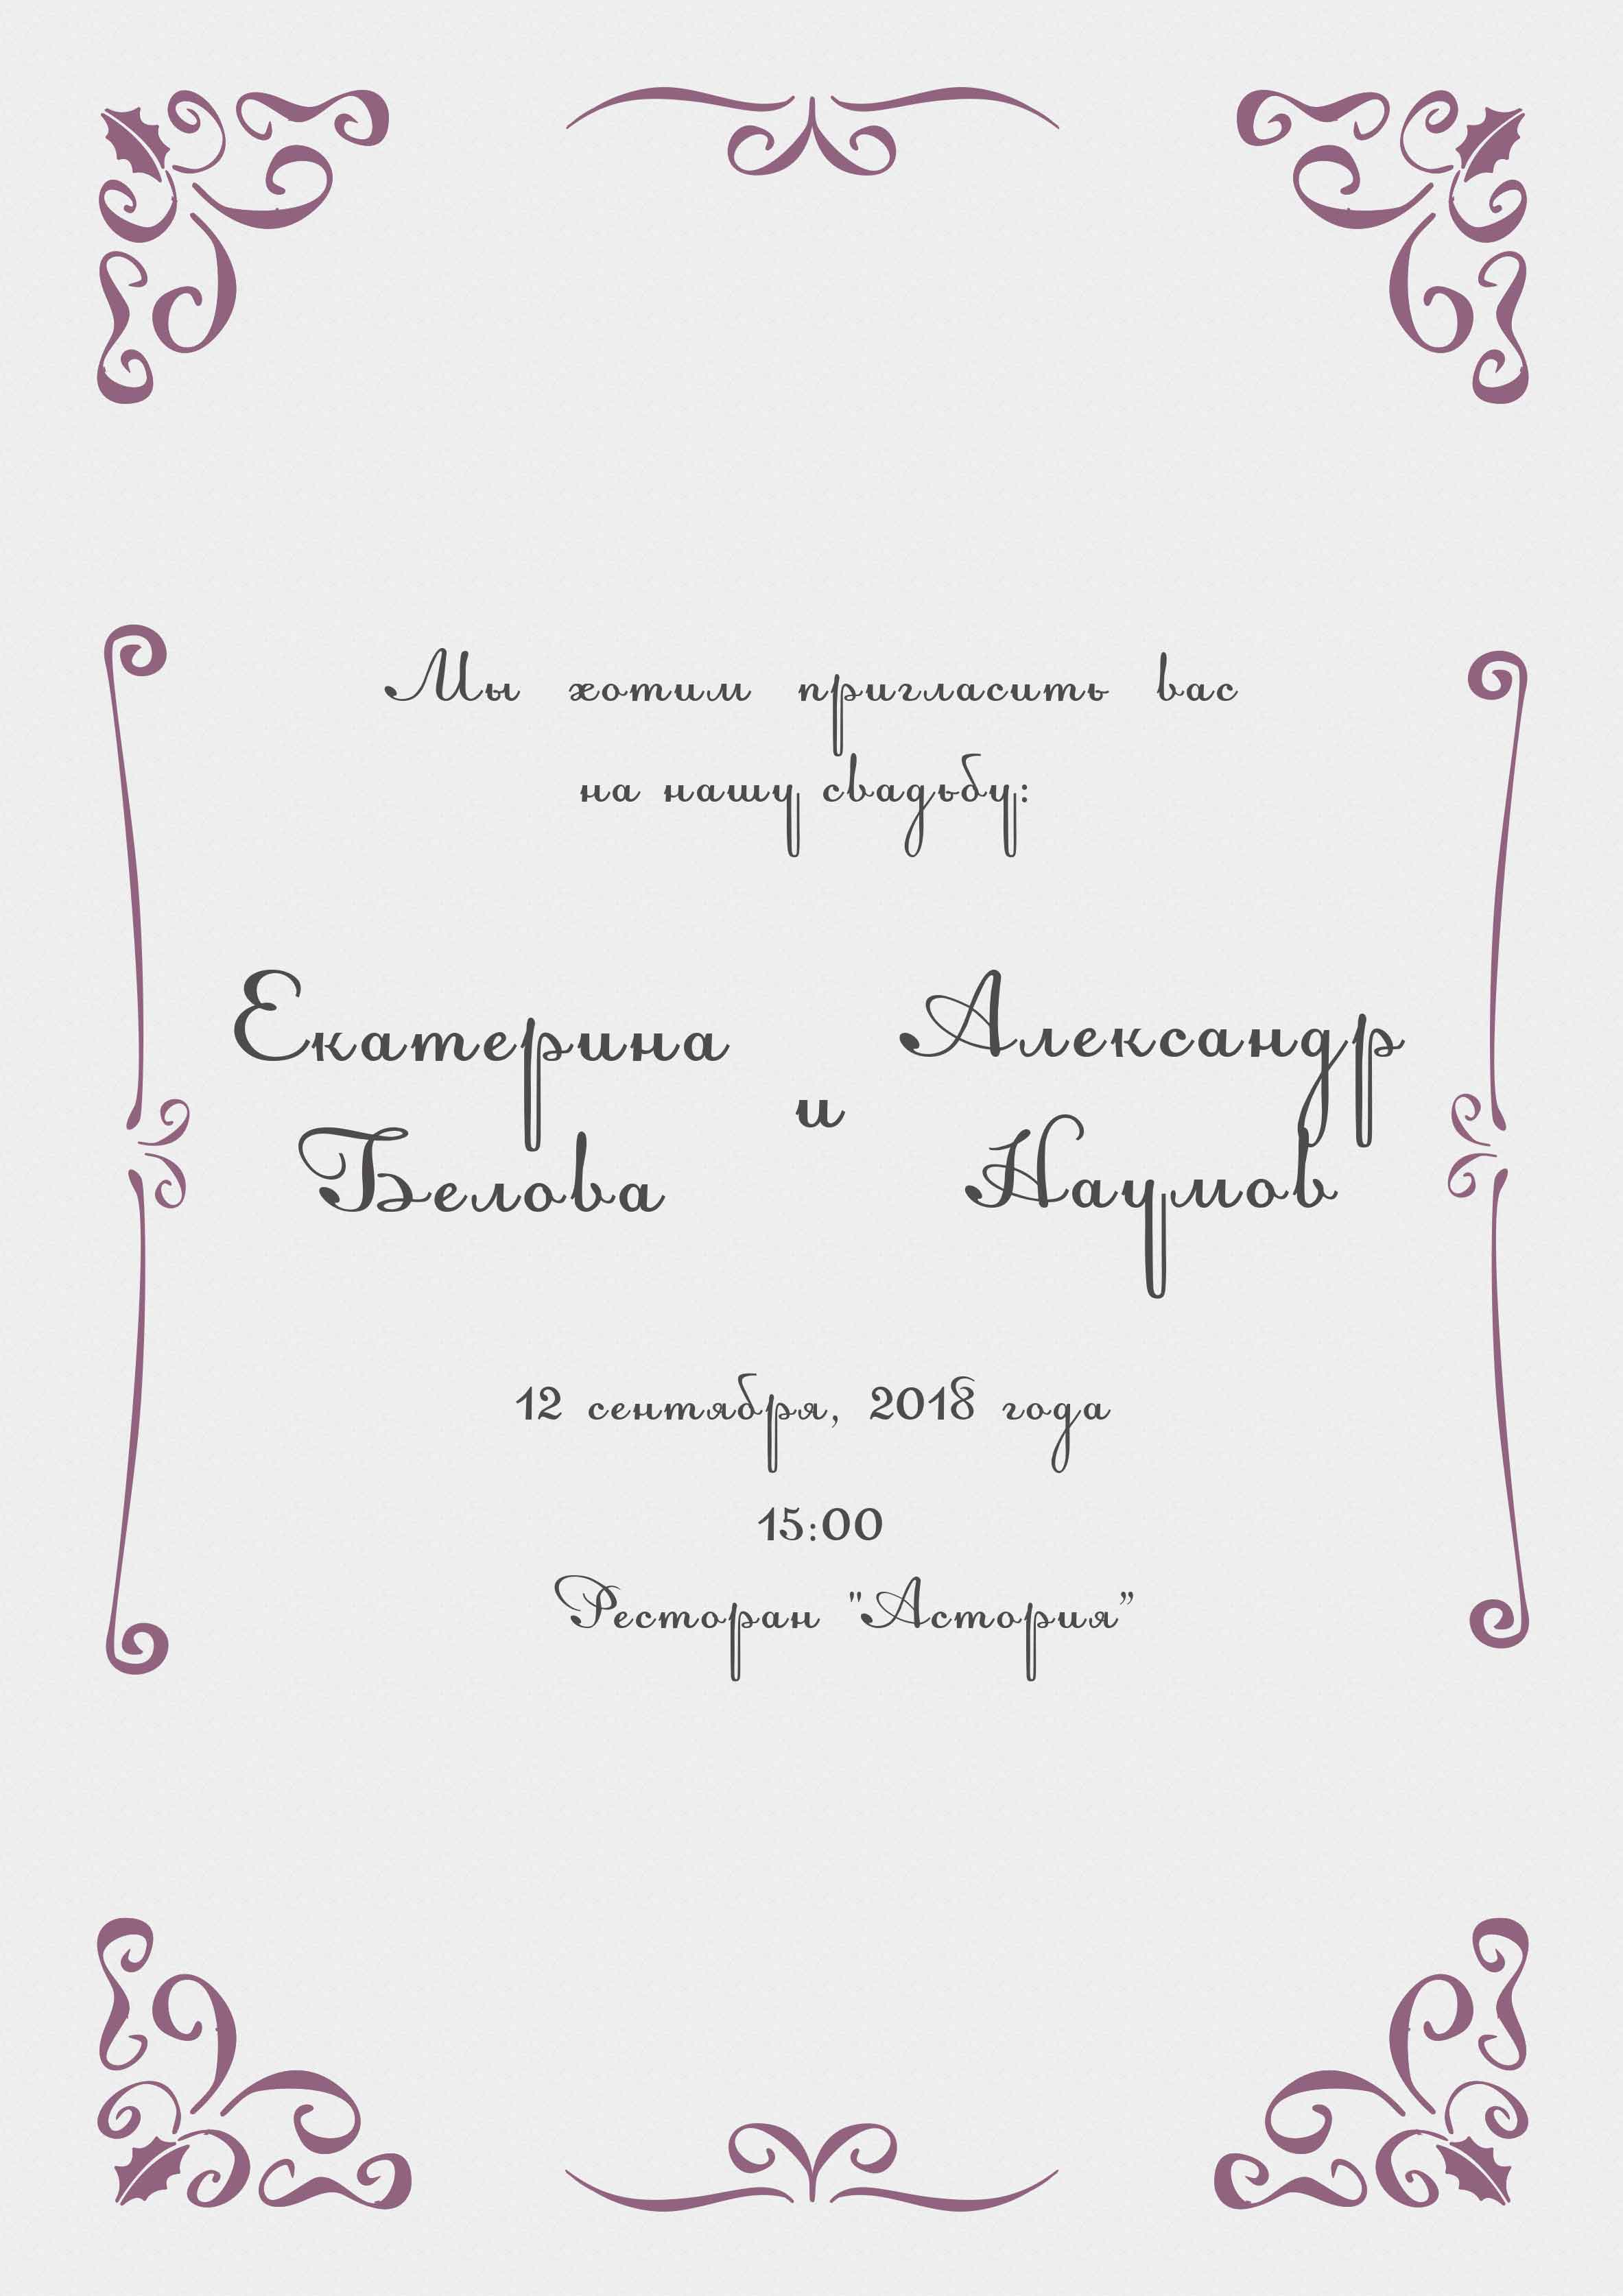 Шаблон для печати пригласительных на свадьбу. как сделать пригласительные на свадьбу в word своими руками – инструкция